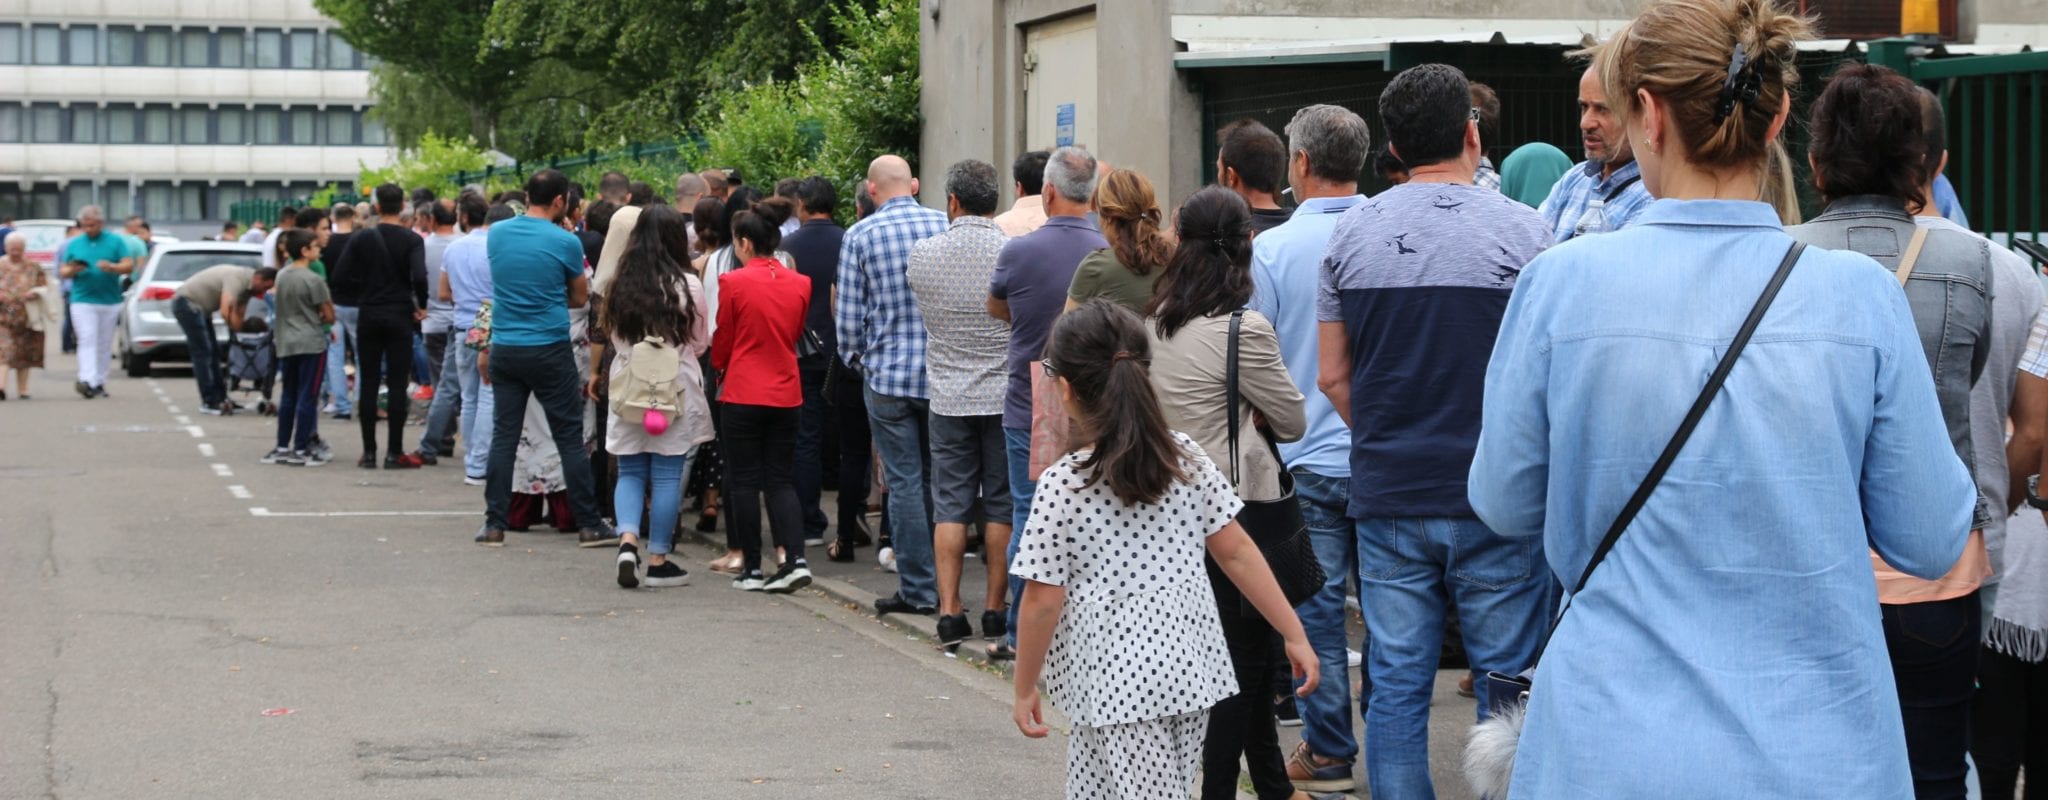 50% de participation au premier tour des élections turques à Strasbourg